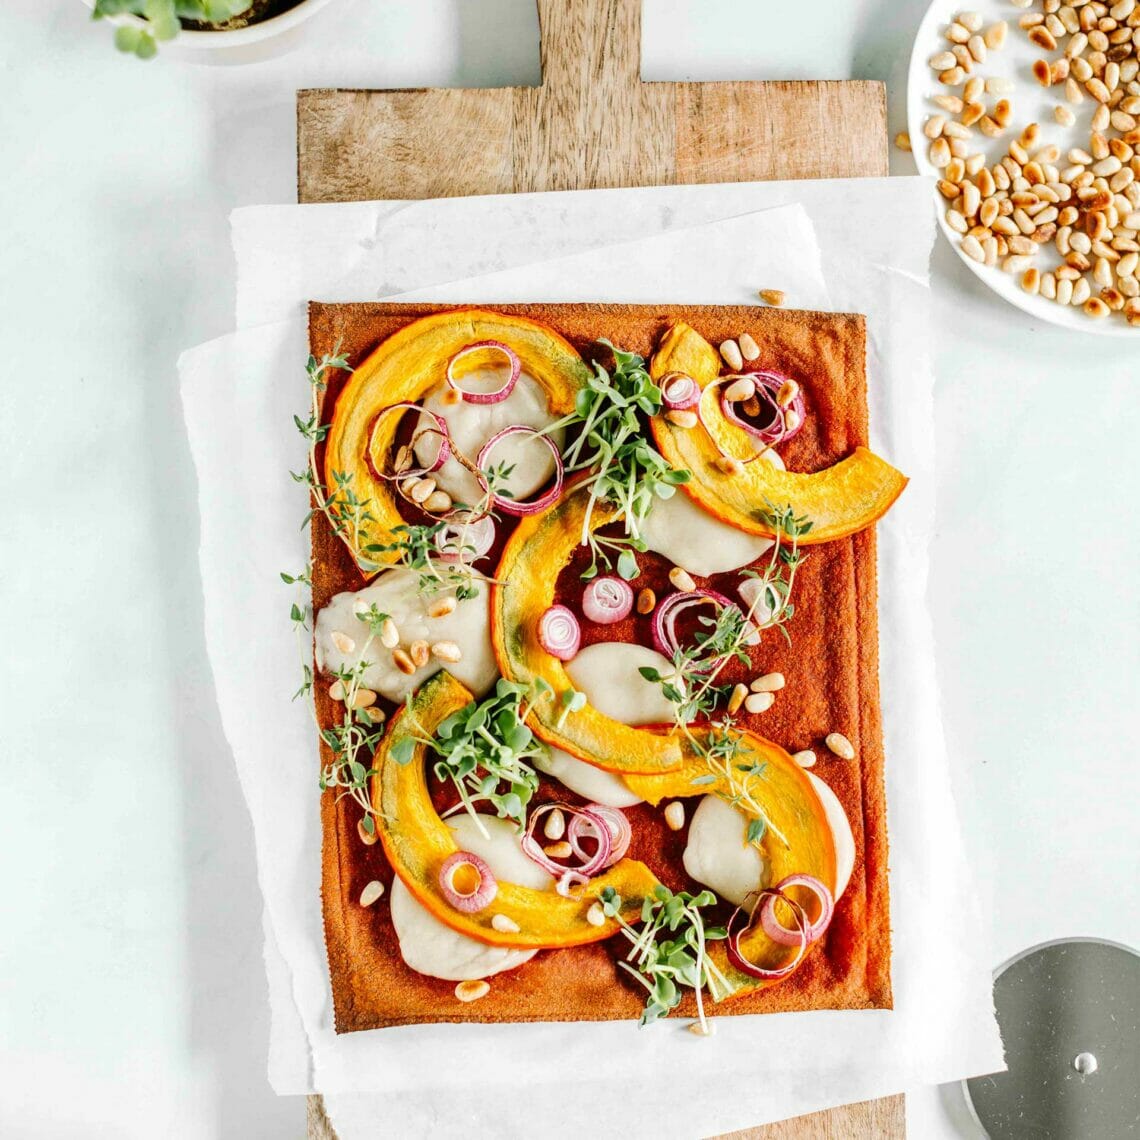 Pizzaboden auf Holzbrett belegt mit Mozzarella, Kürbis, Zwiebeln, gerösteten Pinienkernen, Sprossen und Thymian